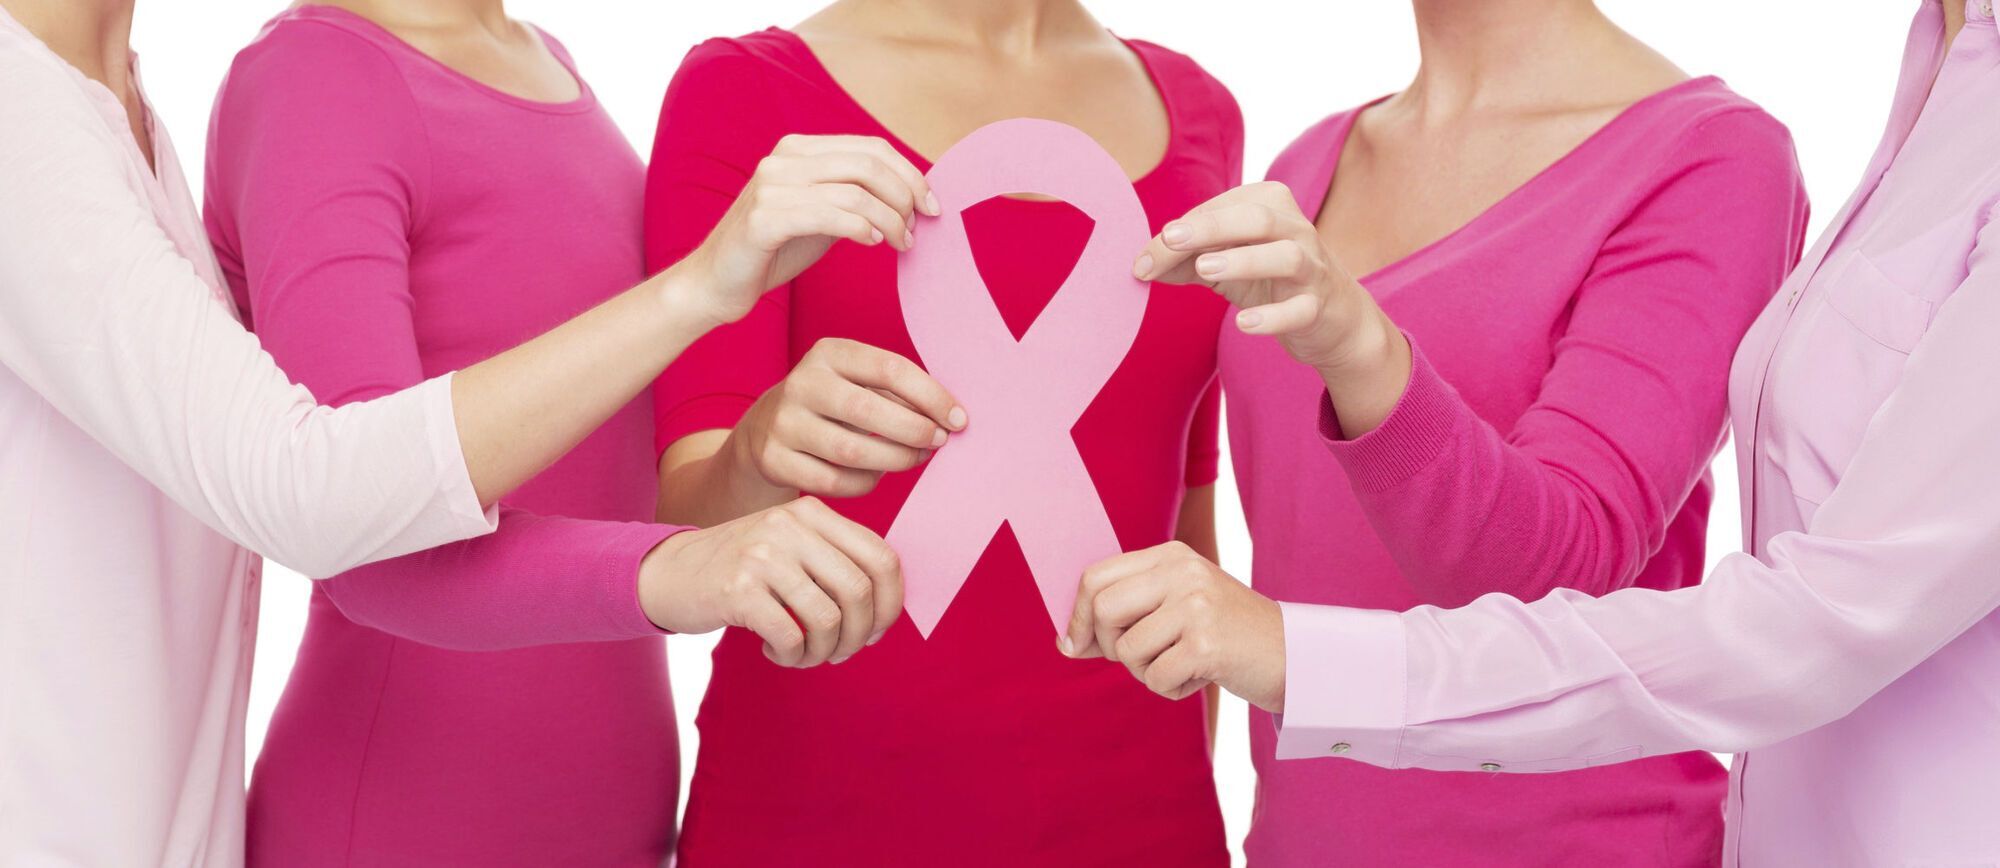 За наявності симптомів раку або пухлини грудей необхідно звернутися до мамолога, гінеколога або хірурга